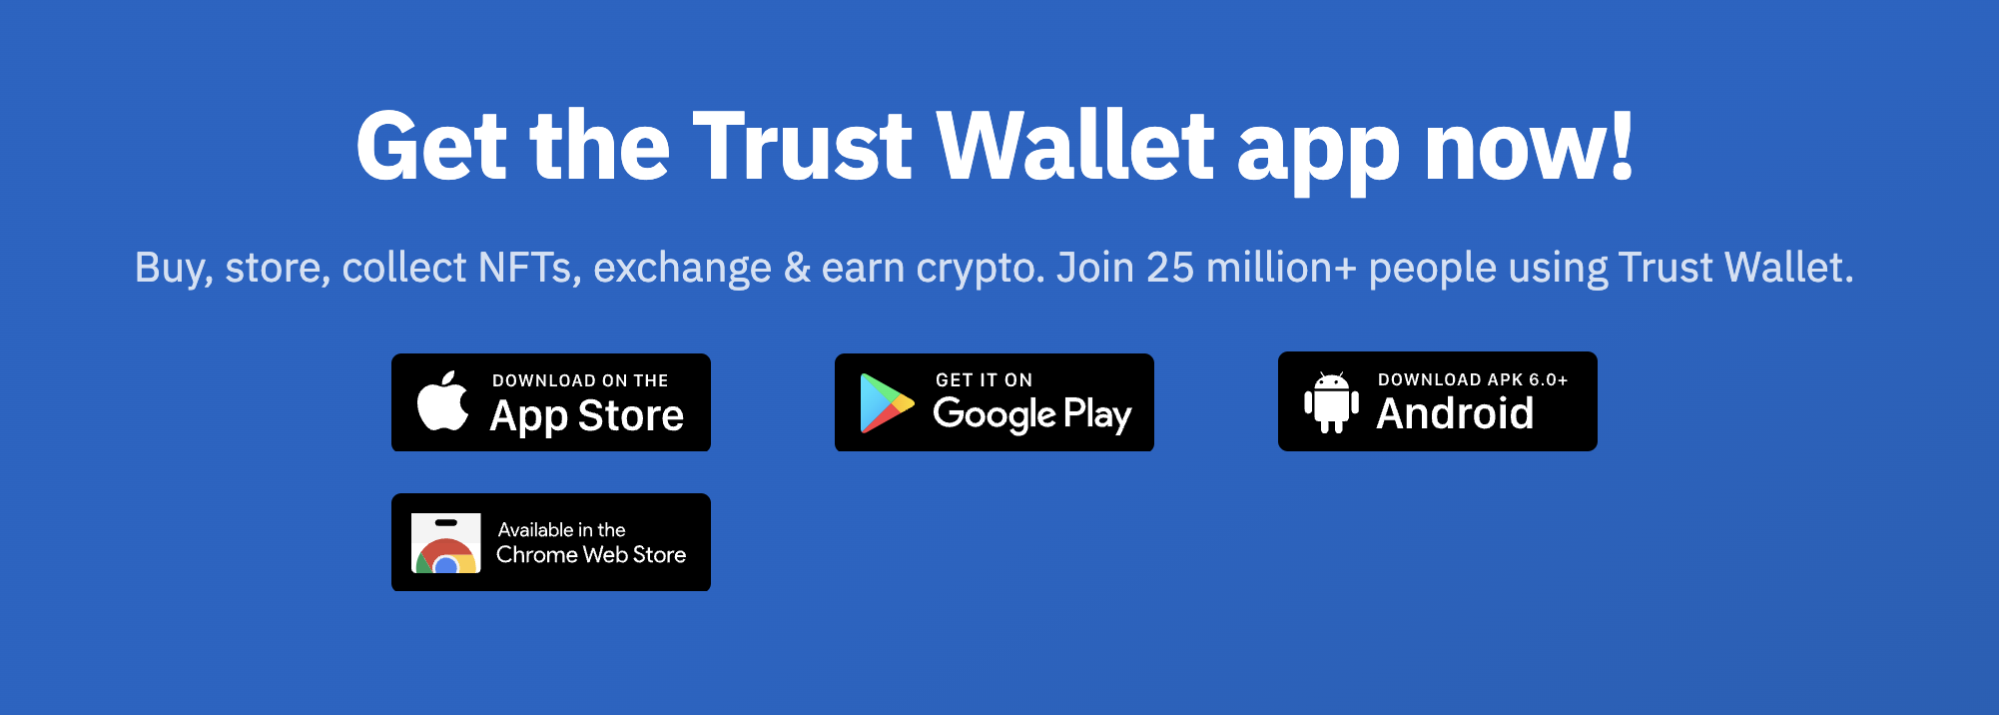 Trust Wallet download screen